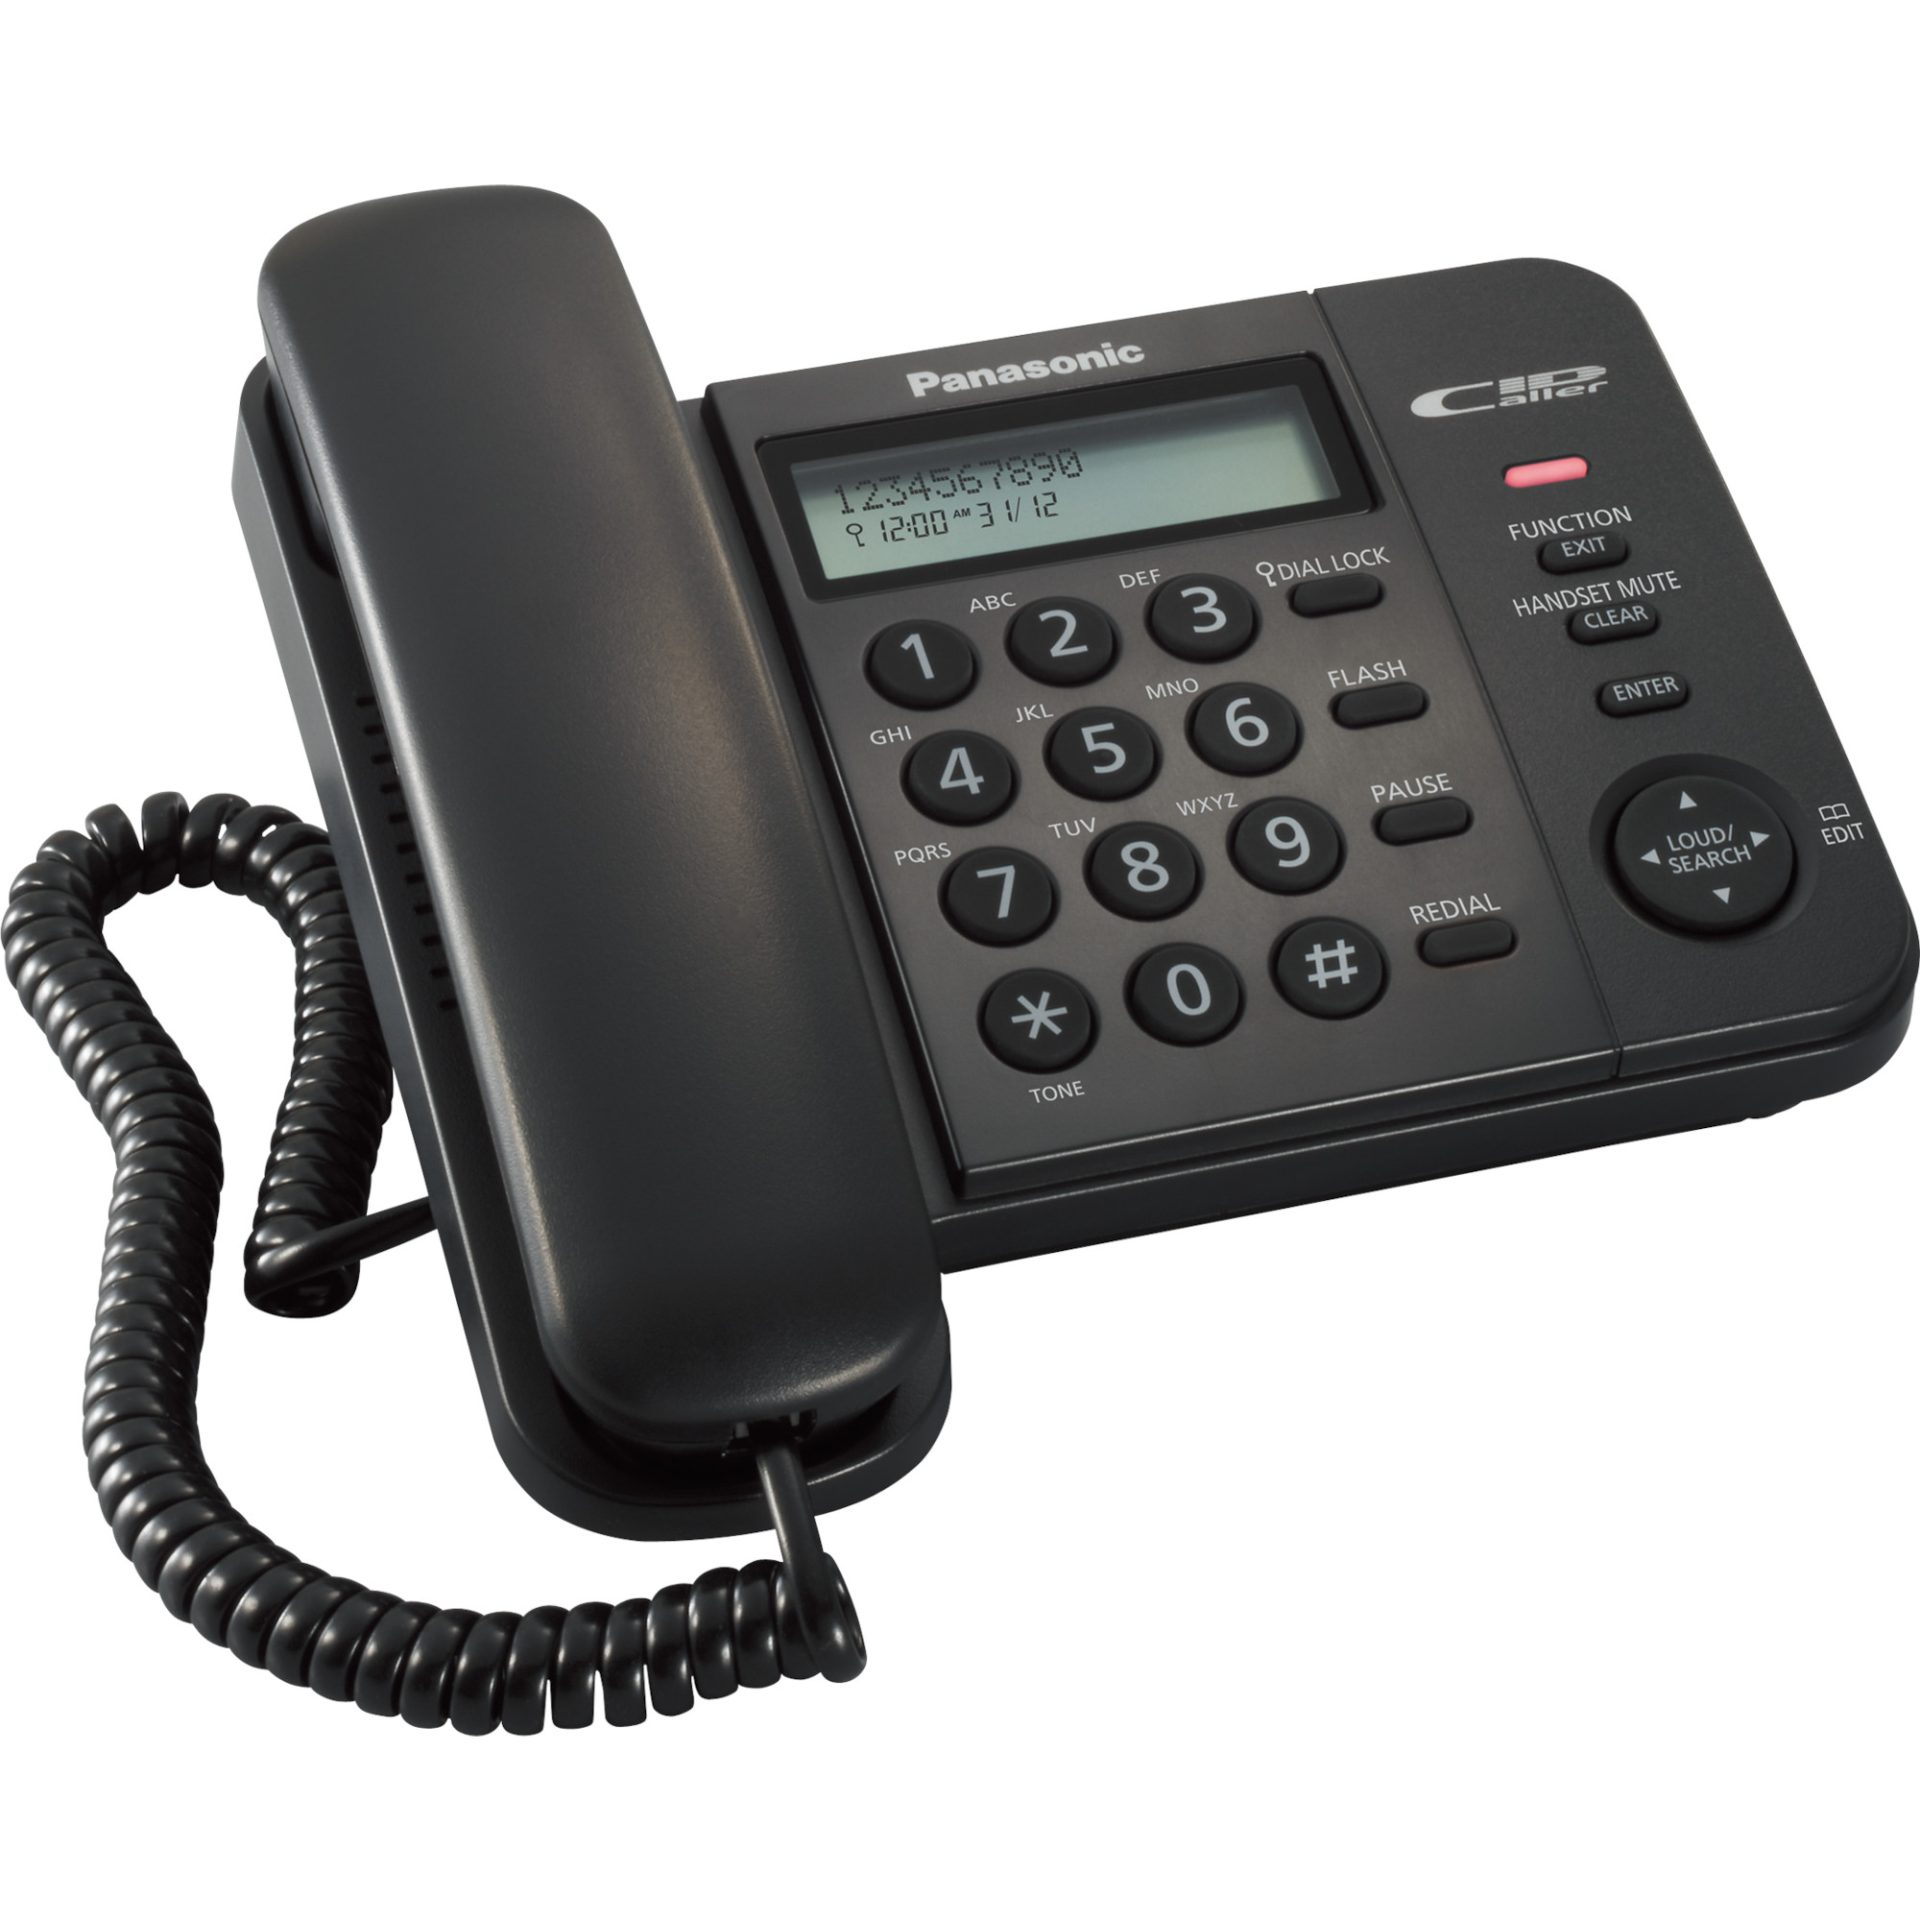 Panasonic KX-TS560 integrovaný telefonní systém (dvouřádkový LCD displej, telefonní seznam, kompatibilní s ID volajícího), černá